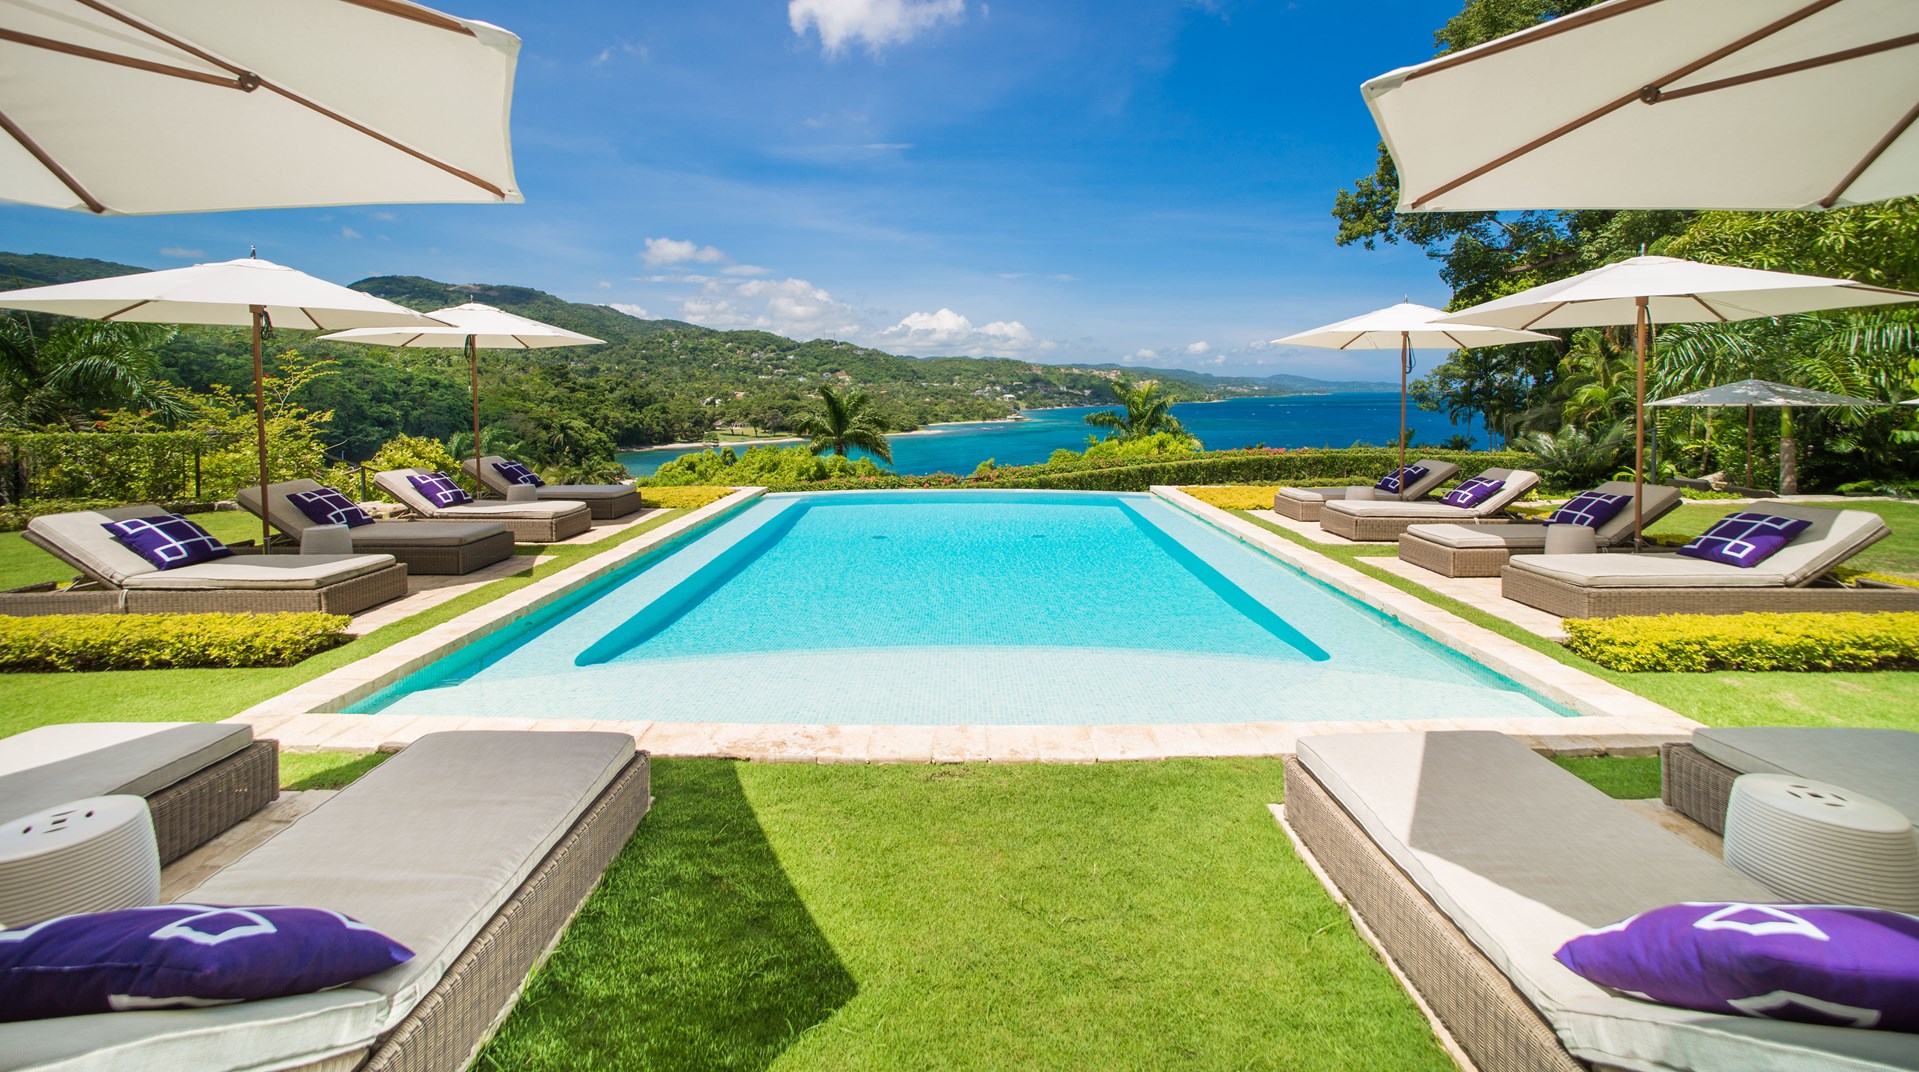 Prachtig resort in Montego Bay, ontworpen door Ralph Lauren himself Round Hill Hotel & Villas